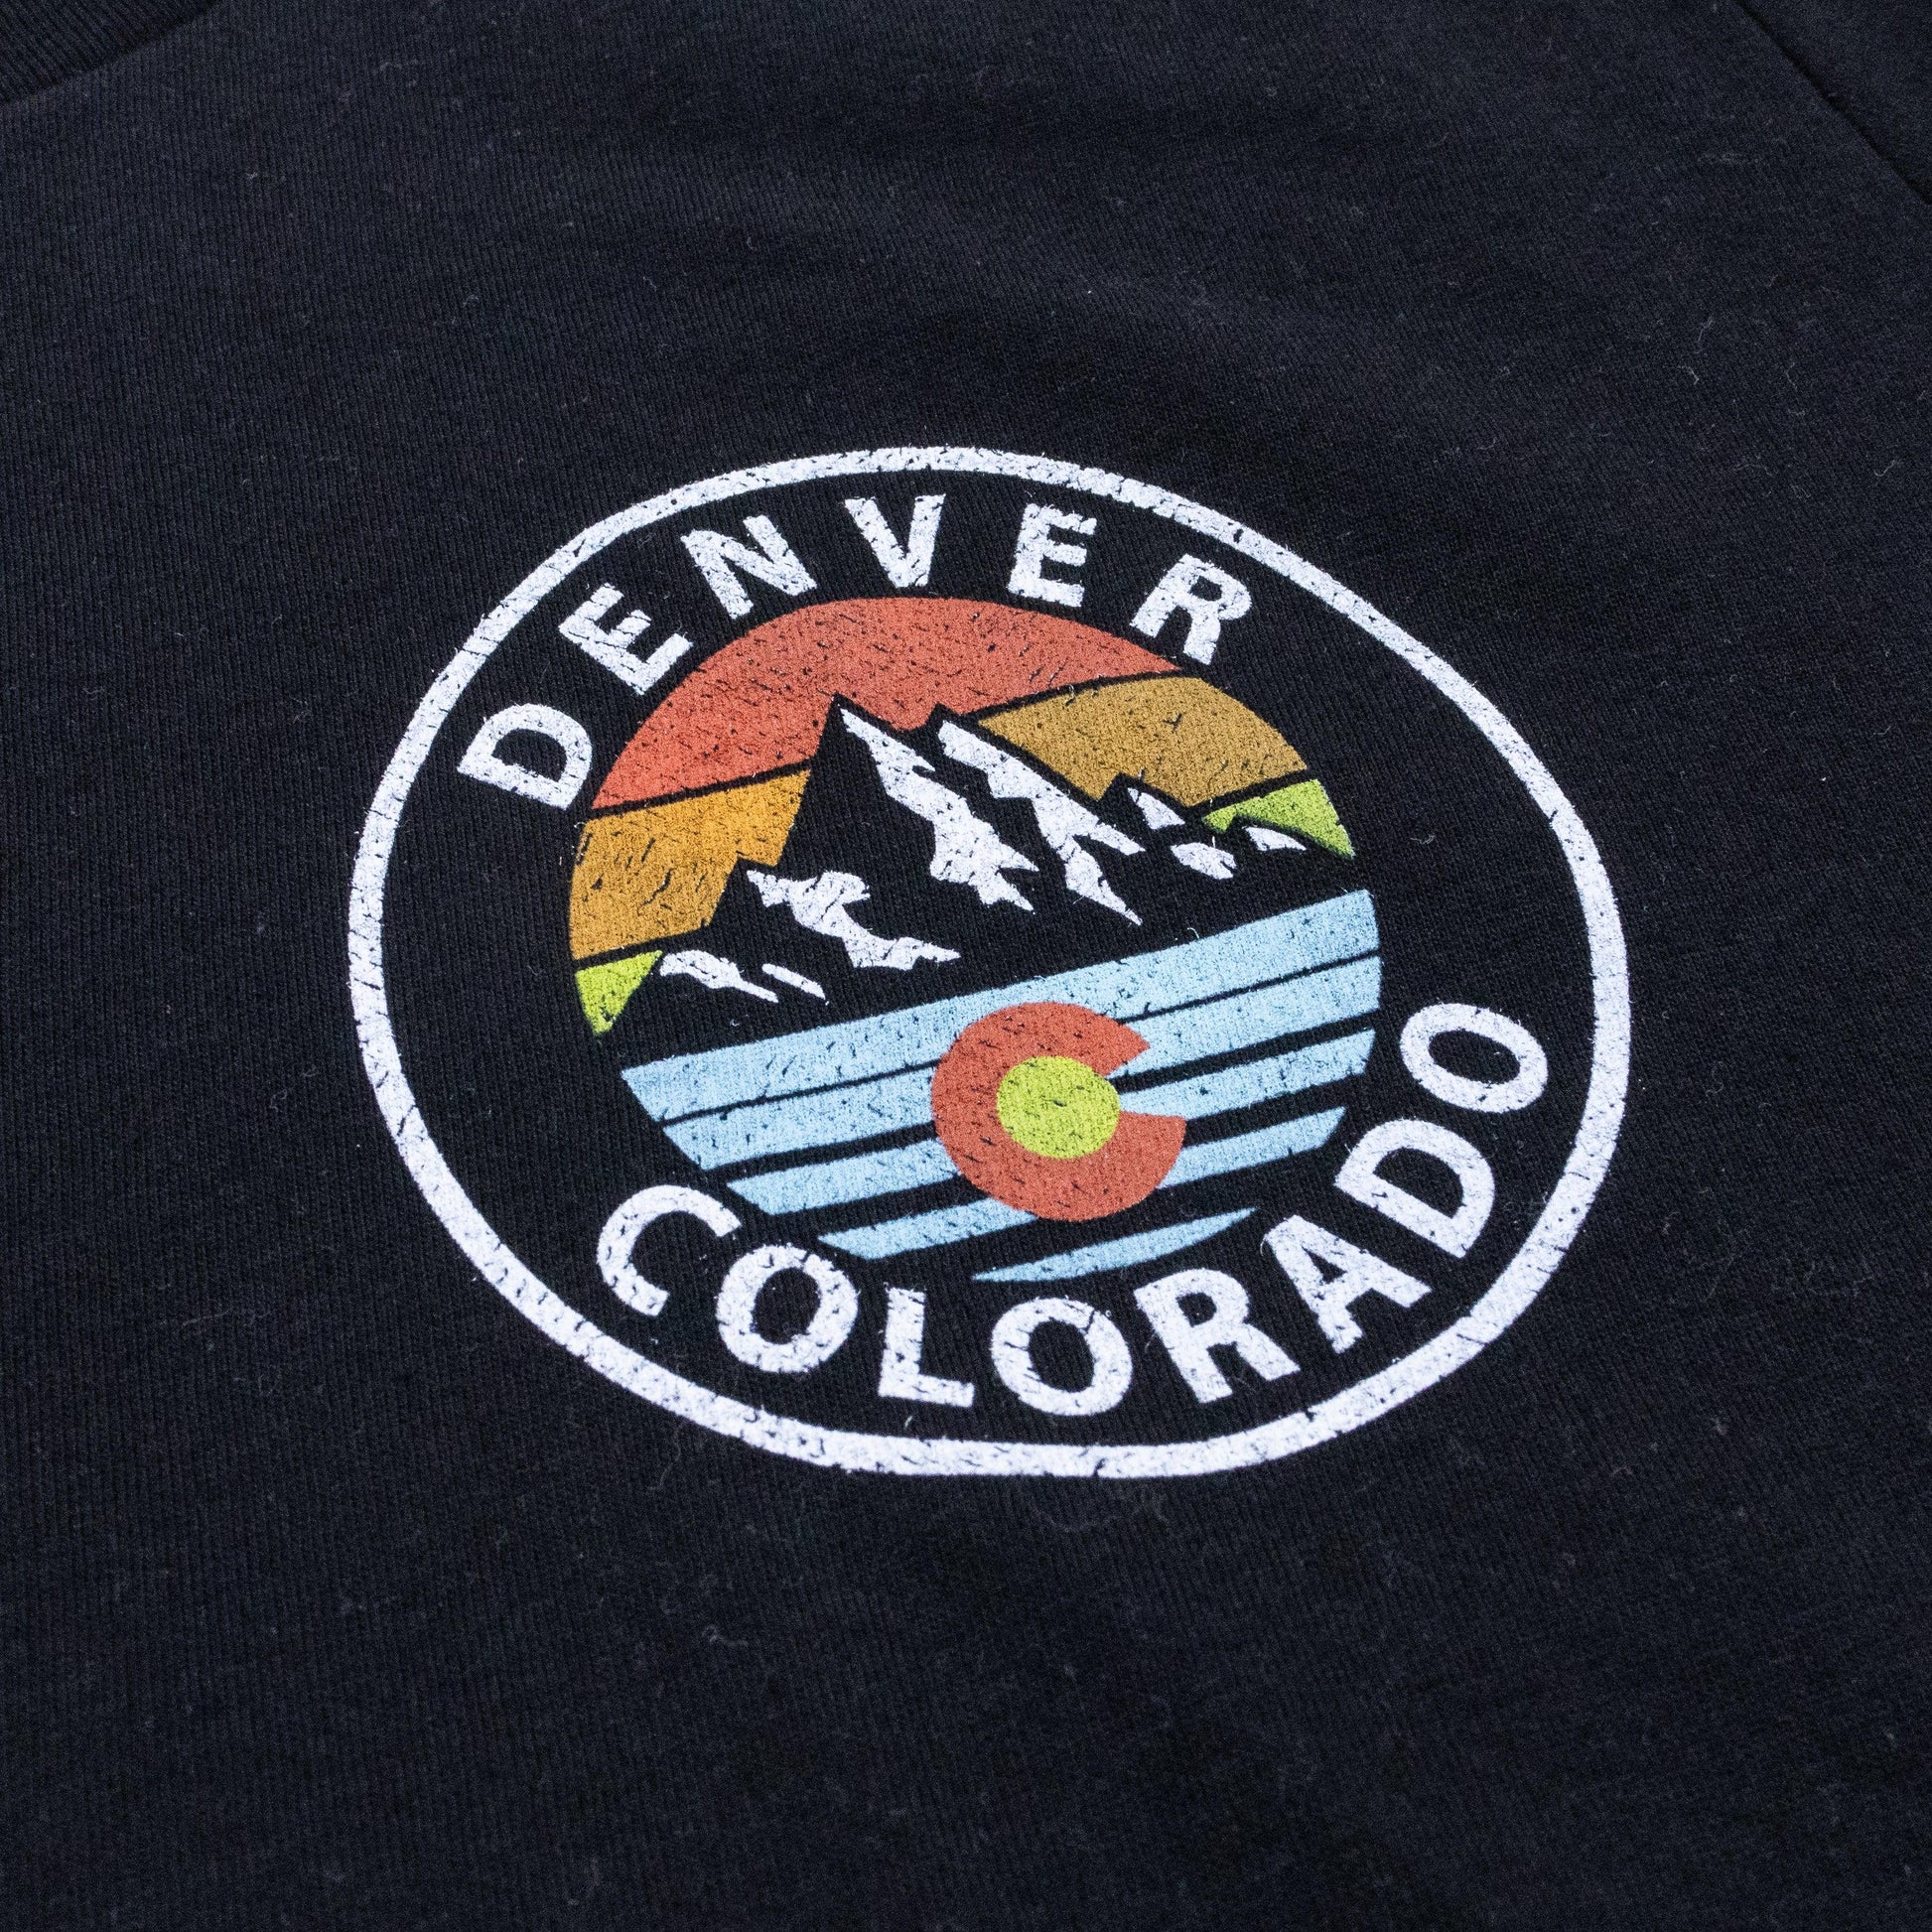 Retro Denver Colorado Tee - Love From USA